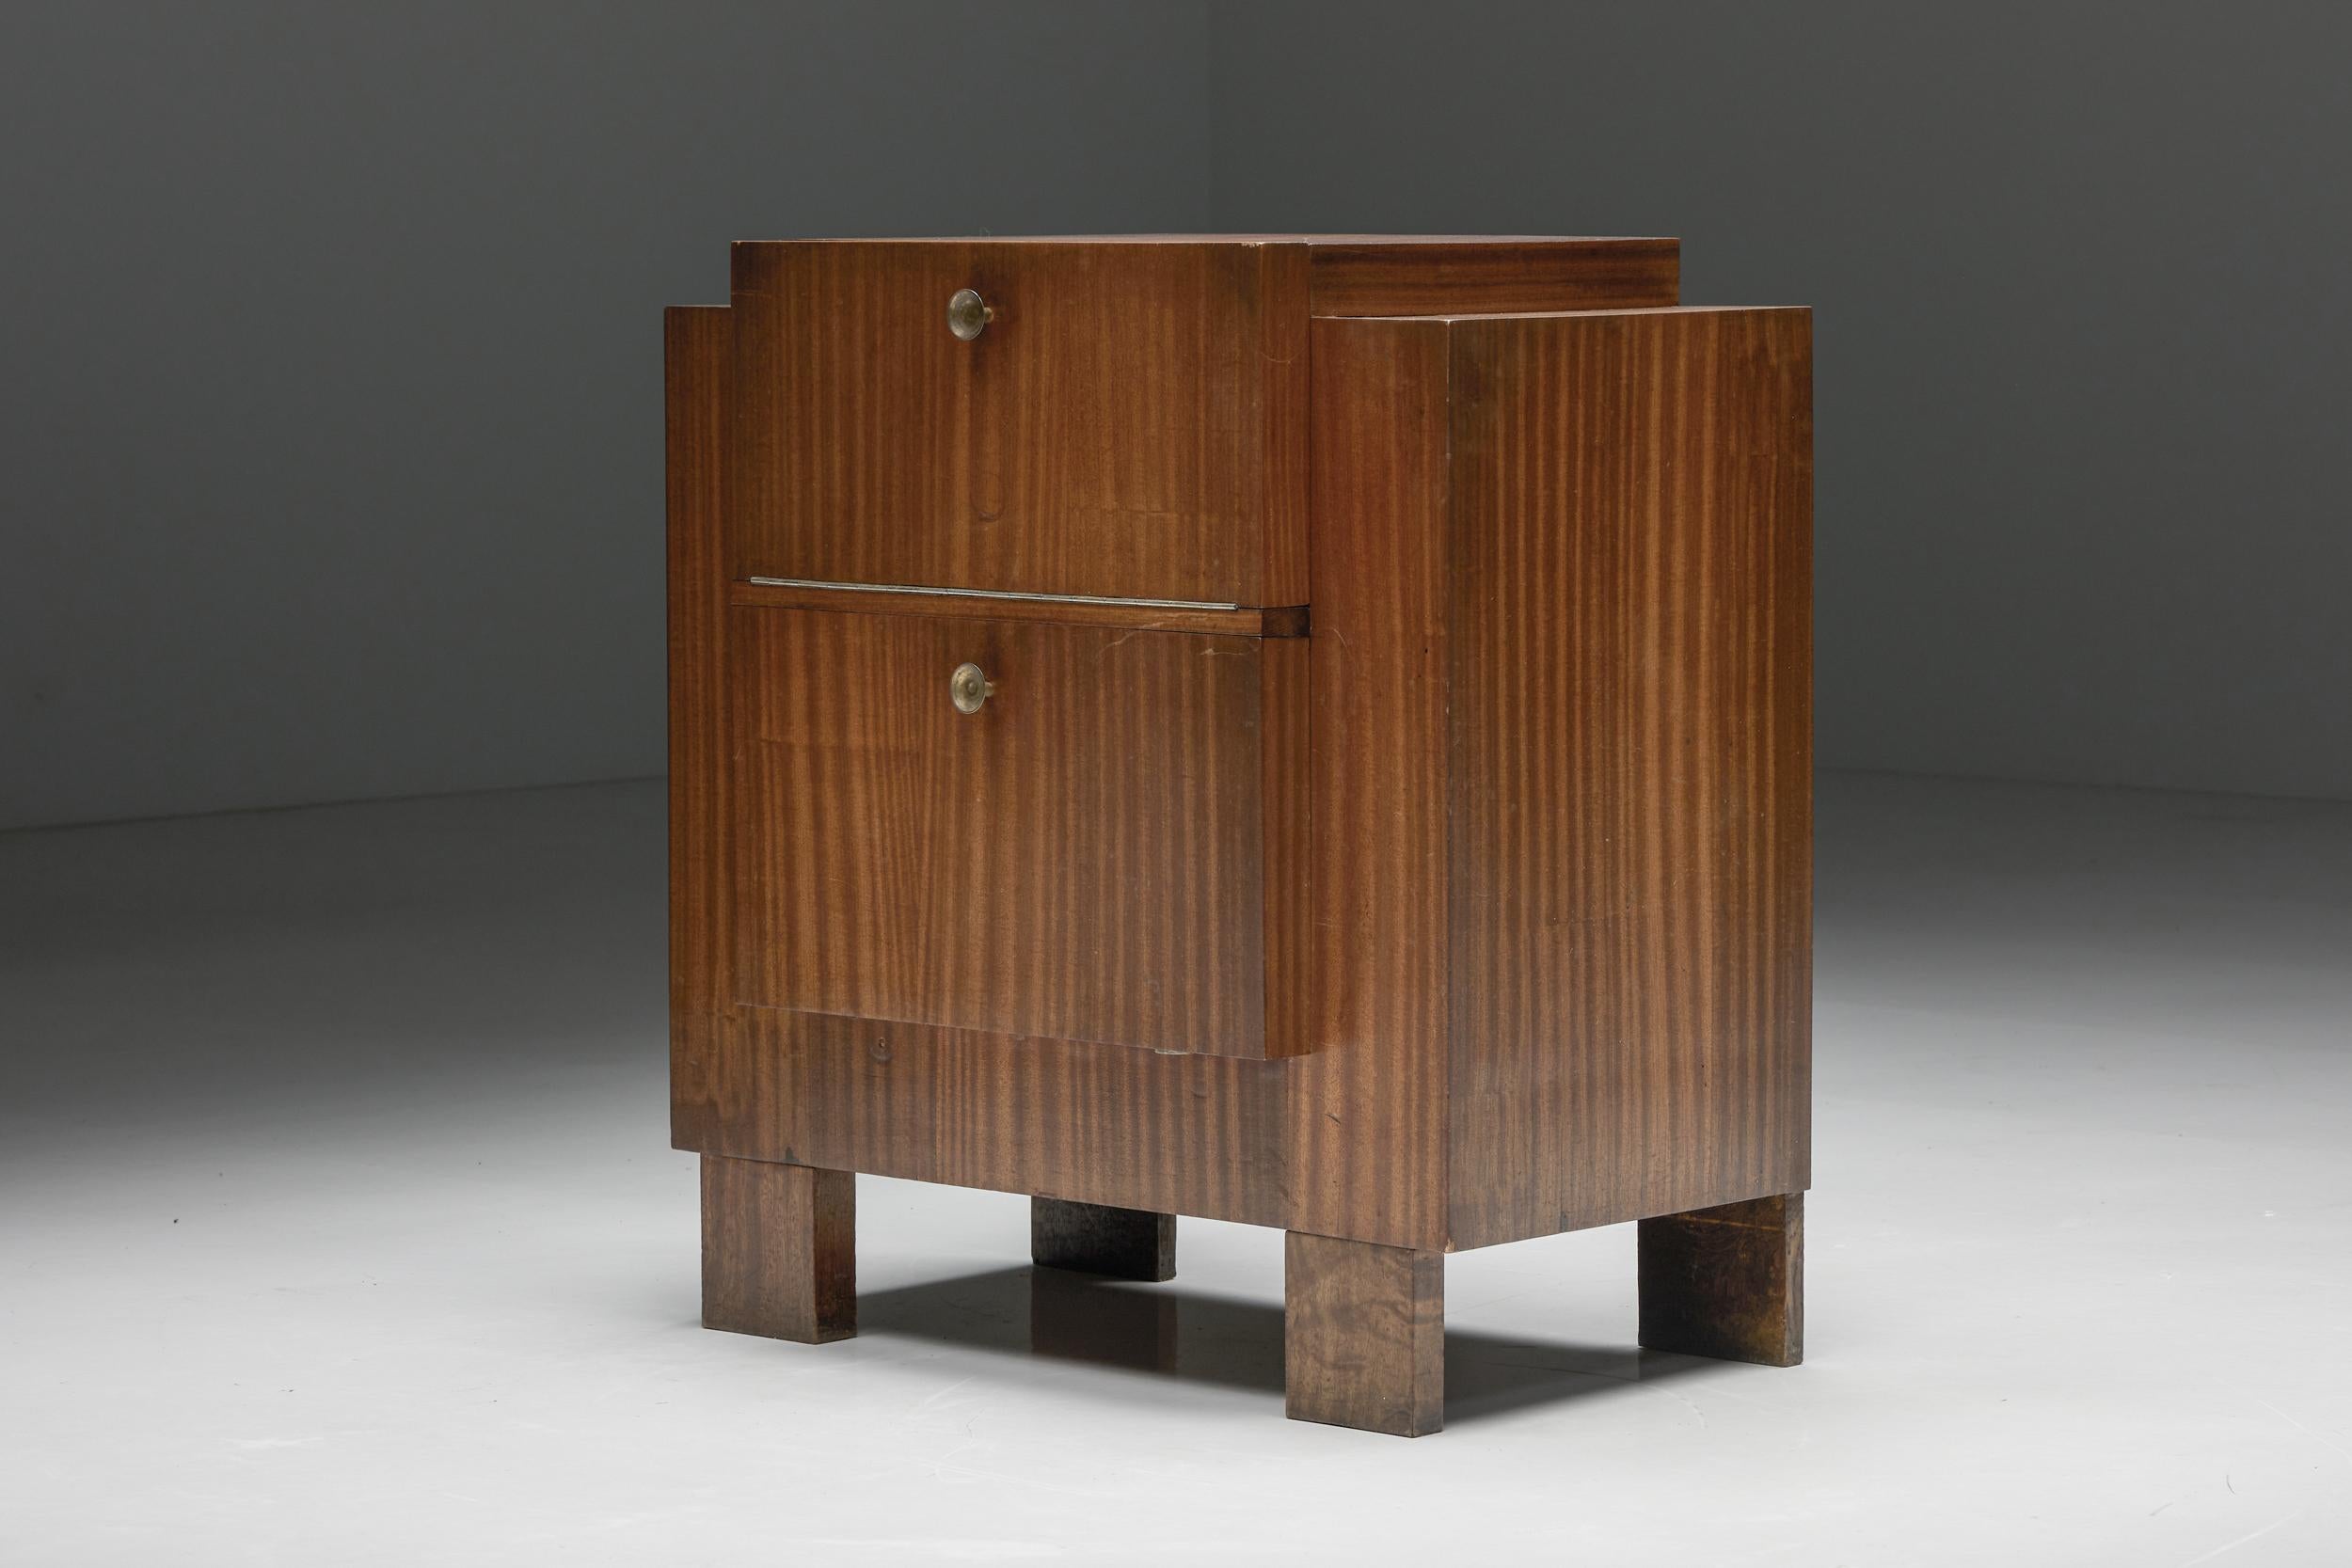 Belgian Two-Doors Cabinet in Modernist Style by John Van Zeeland, Belgium, 1933 For Sale